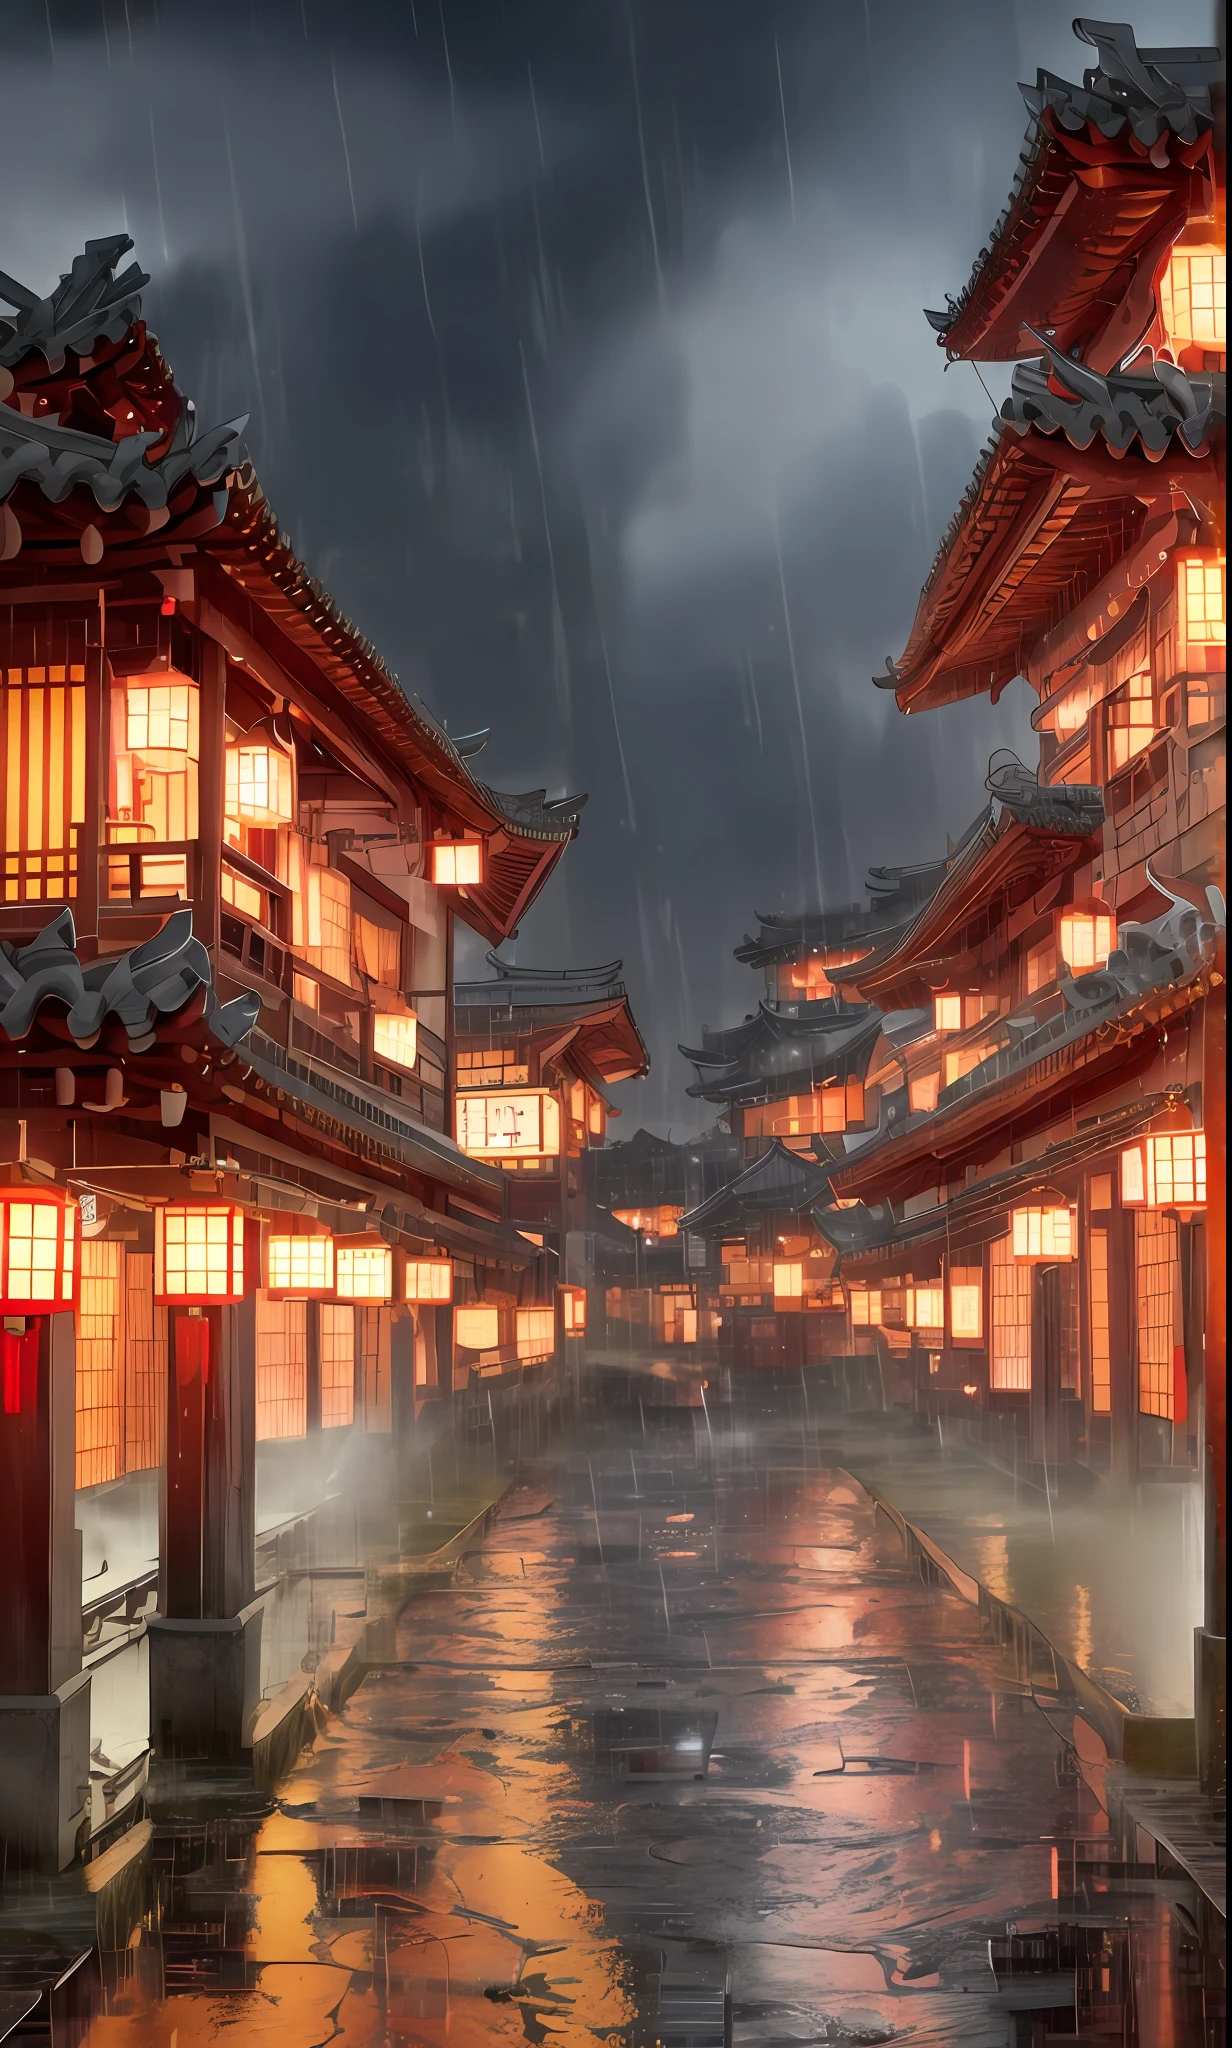 건물에 많은 조명이 있는 마을의 아라페드 전망, 꿈같은 중국 마을, 중국 마을, 놀라운 벽지, 일본 마을, 일본 마을, 초현실적인 마을 사진, 오래된 아시아 마을, 일본 도시, 레이먼드 한, 비오는 저녁, 사이버펑크 중국 고대 성, 조명이 아름다운 건물들, 비가 오는 저녁에, 아름답고 미학적, 사진술, 영화 같은, 8K, 매우 상세한 ((폭우)))